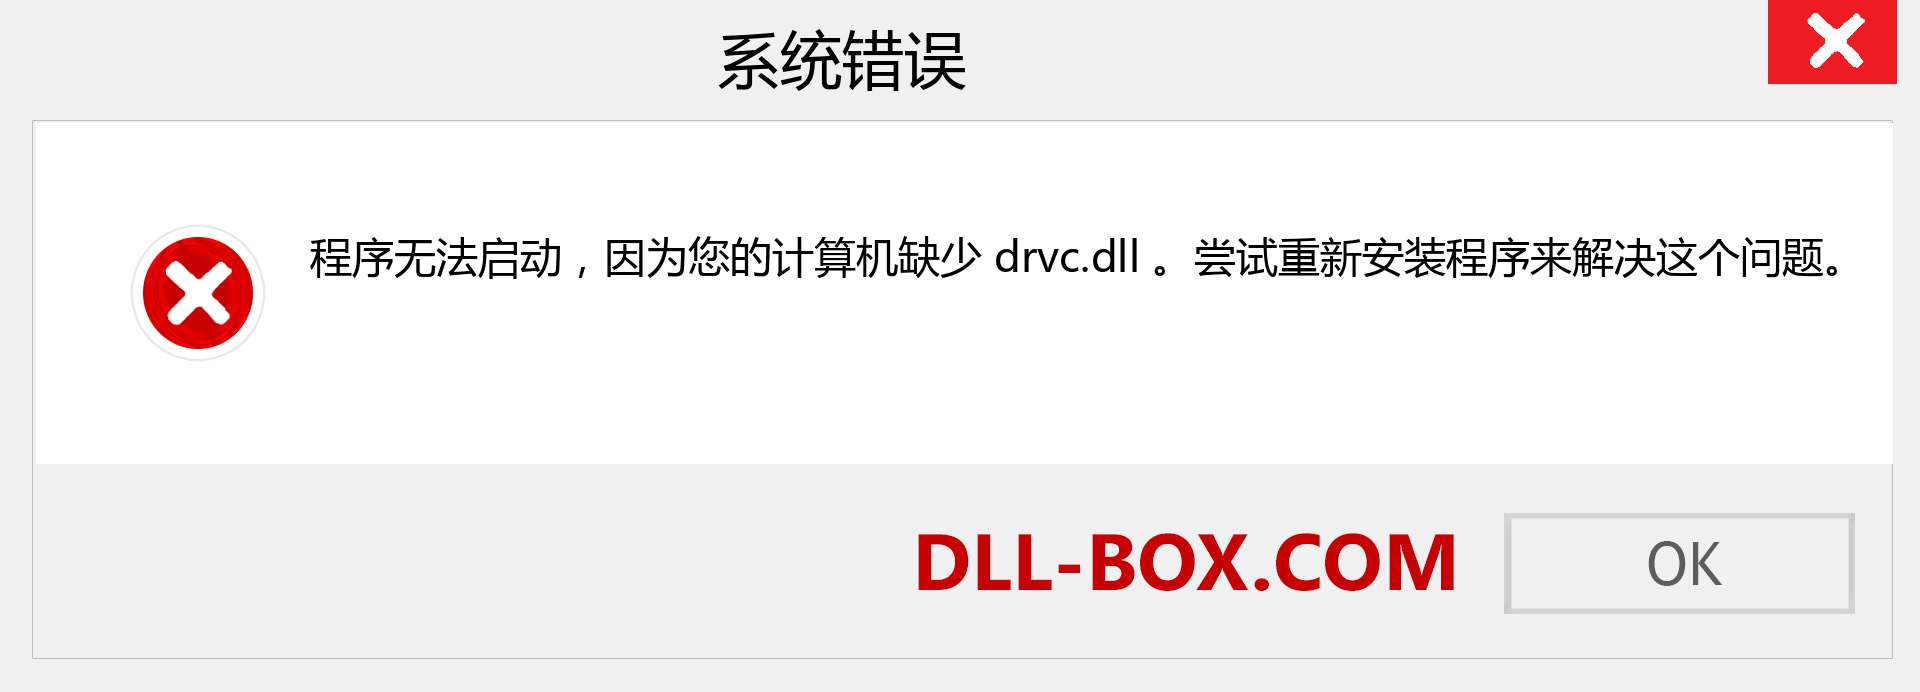 drvc.dll 文件丢失？。 适用于 Windows 7、8、10 的下载 - 修复 Windows、照片、图像上的 drvc dll 丢失错误